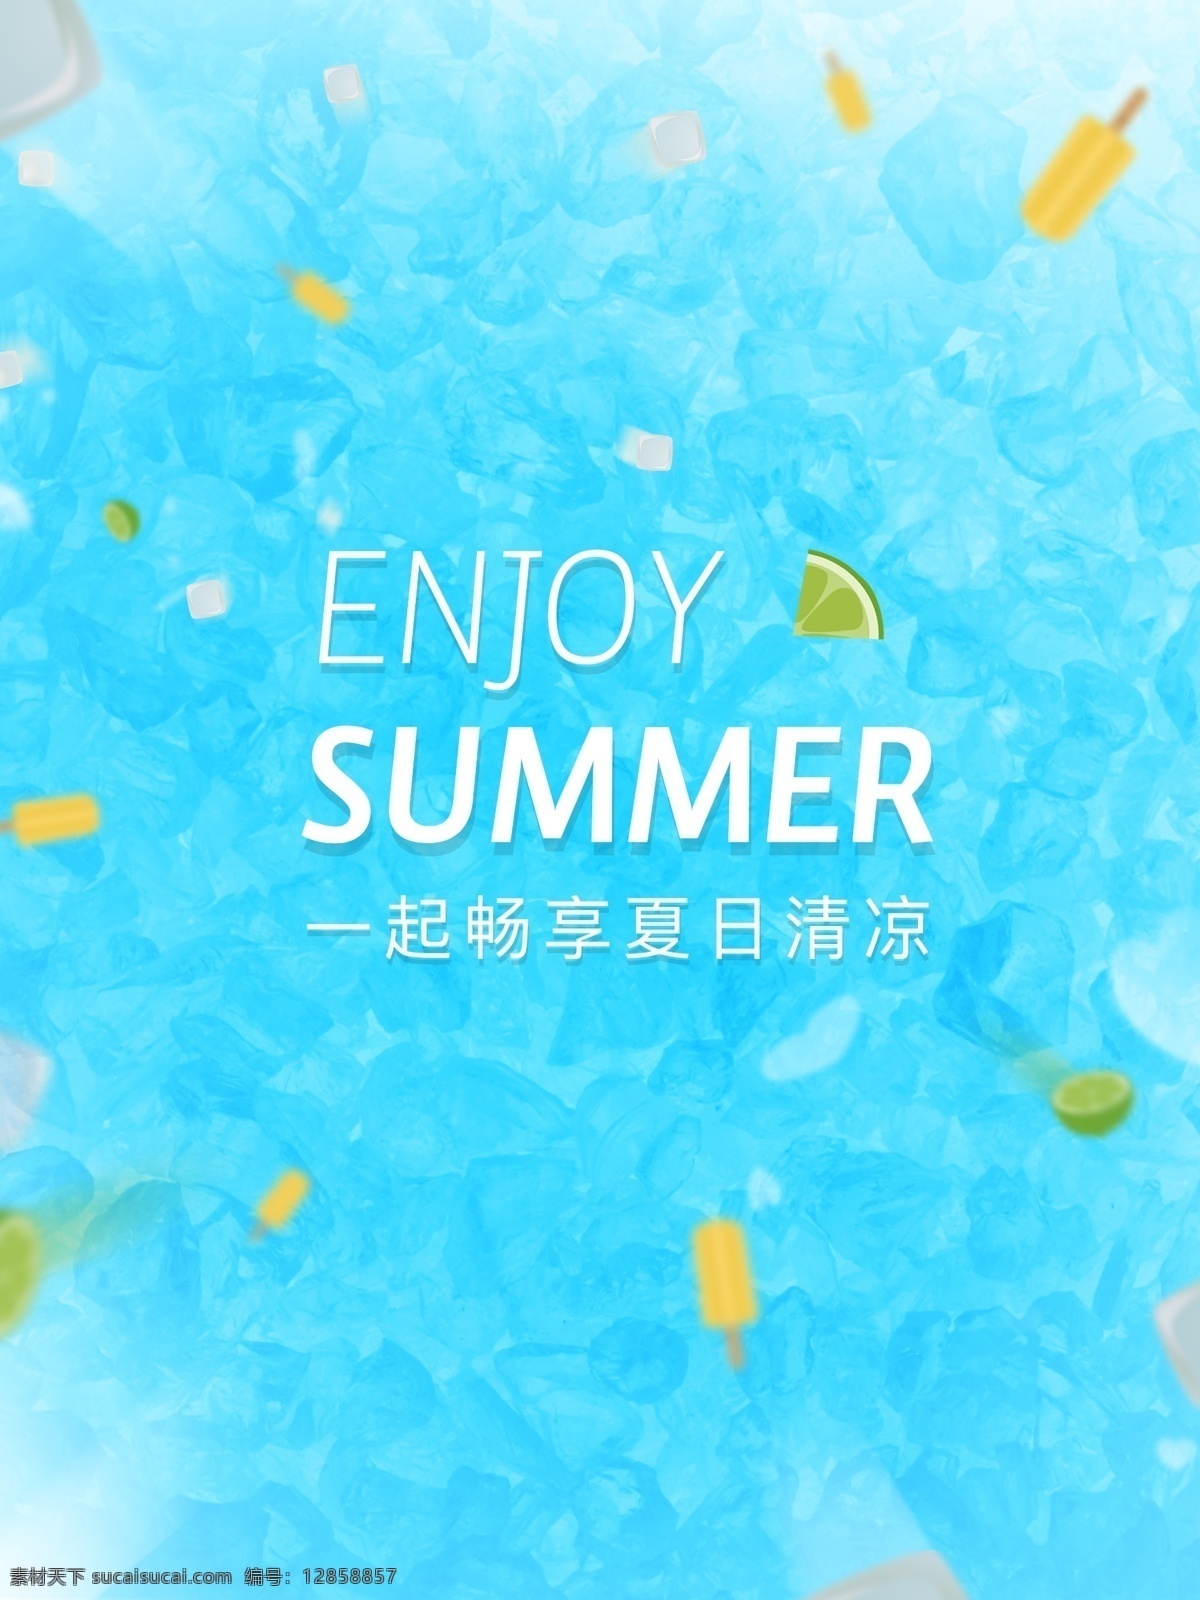 冰 爽 一夏 水果 冰棍 畅 享 夏日 清凉 背景 畅享 冰爽 冰块 促销 广告背景 广告模板 夏天